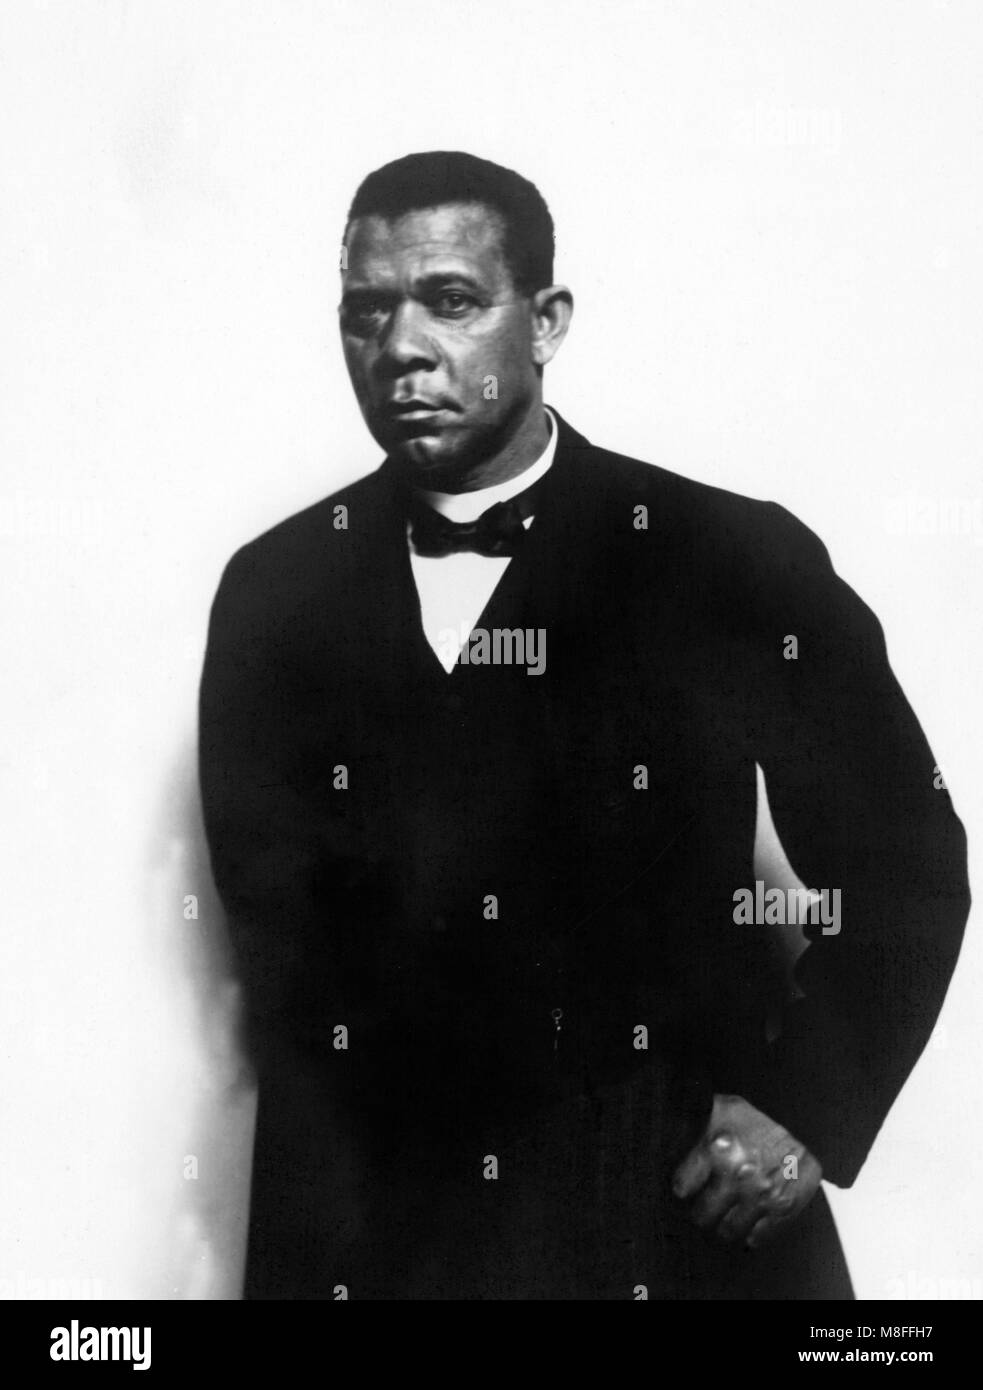 Booker T Washington. Ritratto dello scrittore americano, educatore e leader dei diritti civili Booker Taliaferro Washington (1856-1915) da C M Battey. Foto Stock